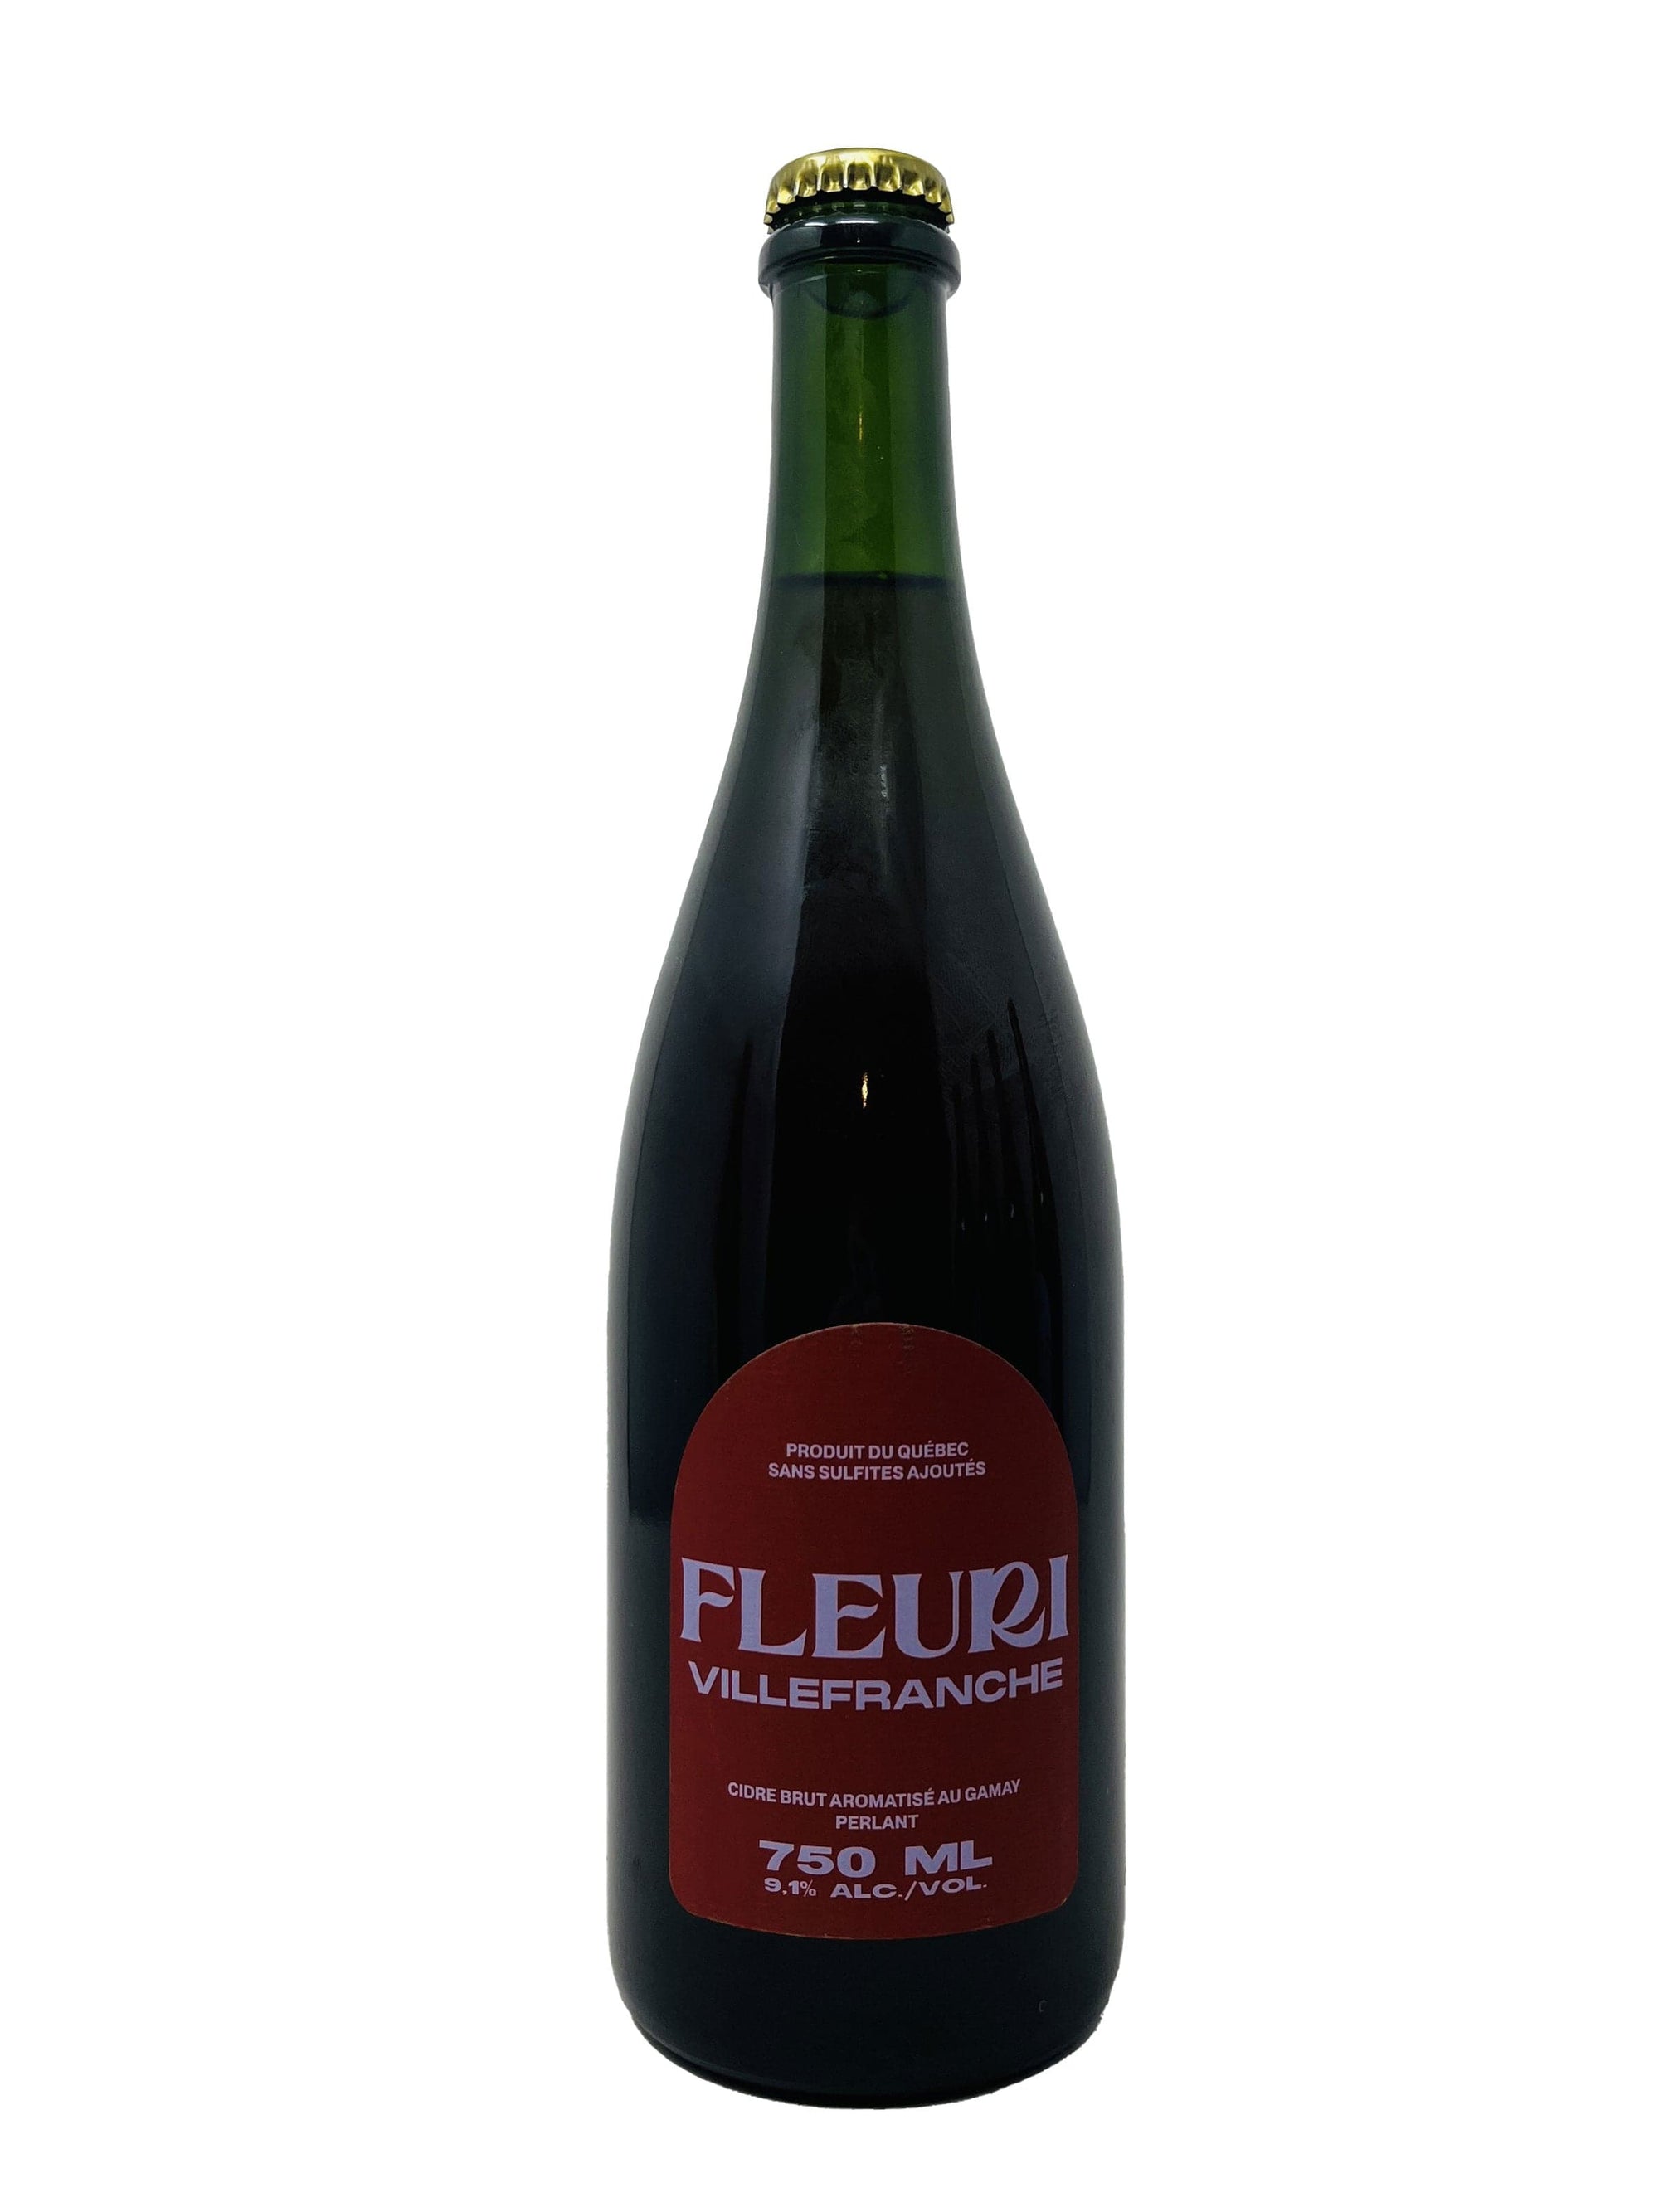 Cidrerie Fleuri Villefranche - Cidre brut perlant aromatisé au Gamay de chez cidre Fleuri biologique